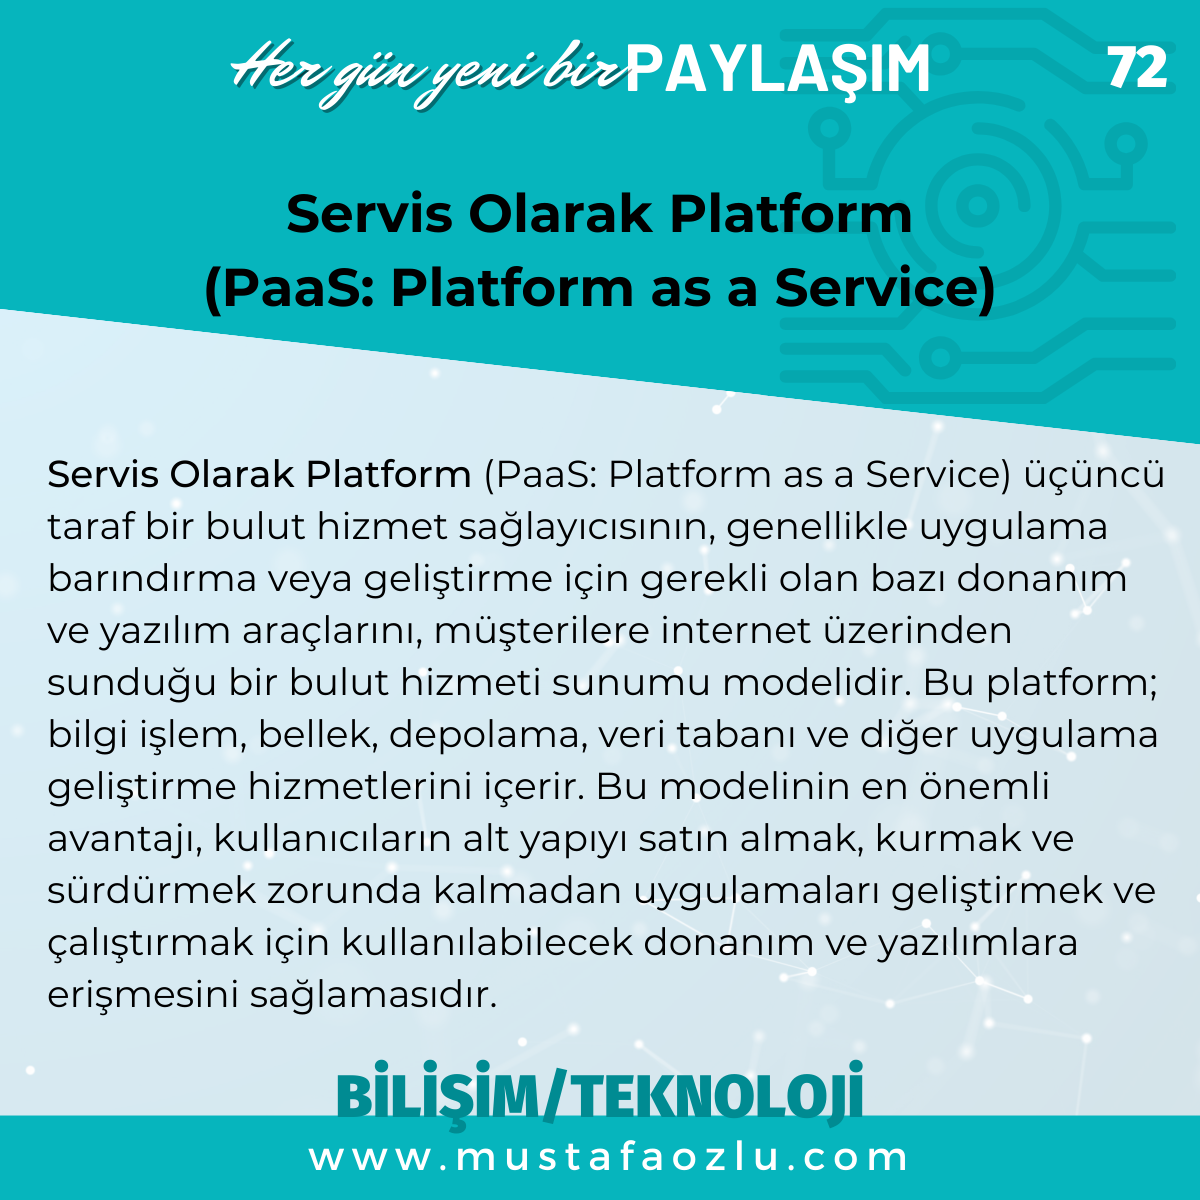 Servis Olarak Platform 
(PaaS: Platform as a Service) - Mustafa ÖZLÜ